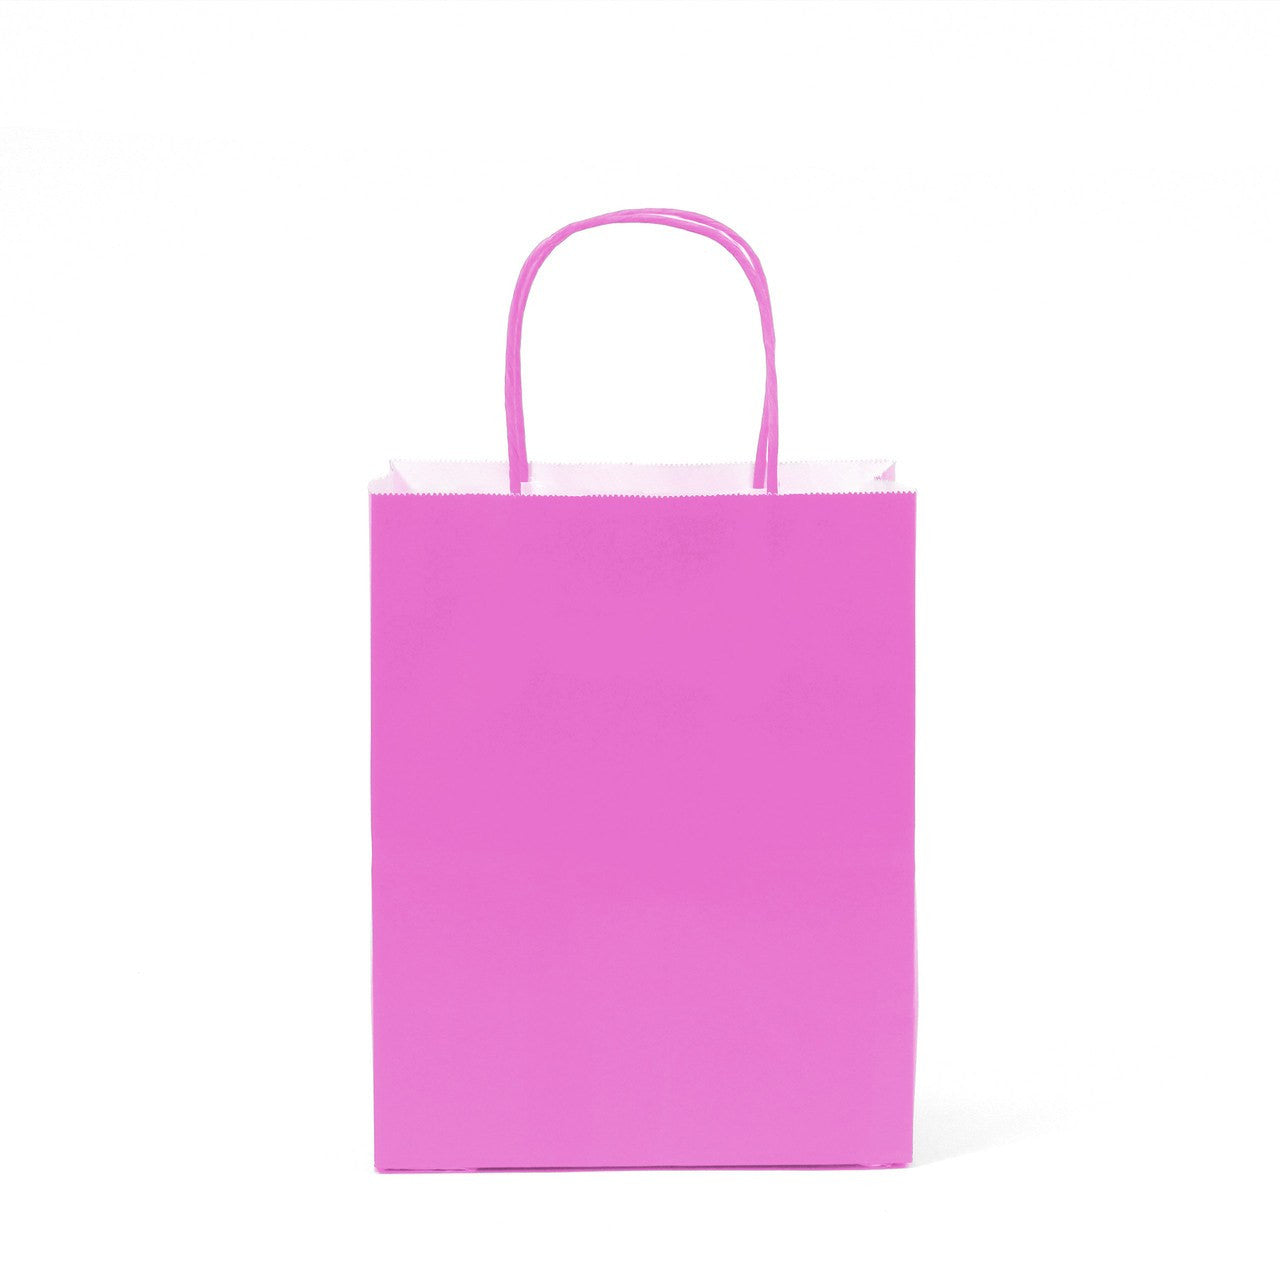 12 pcs- Solid Hot Pink Color Kraft Bag 8" x 10"